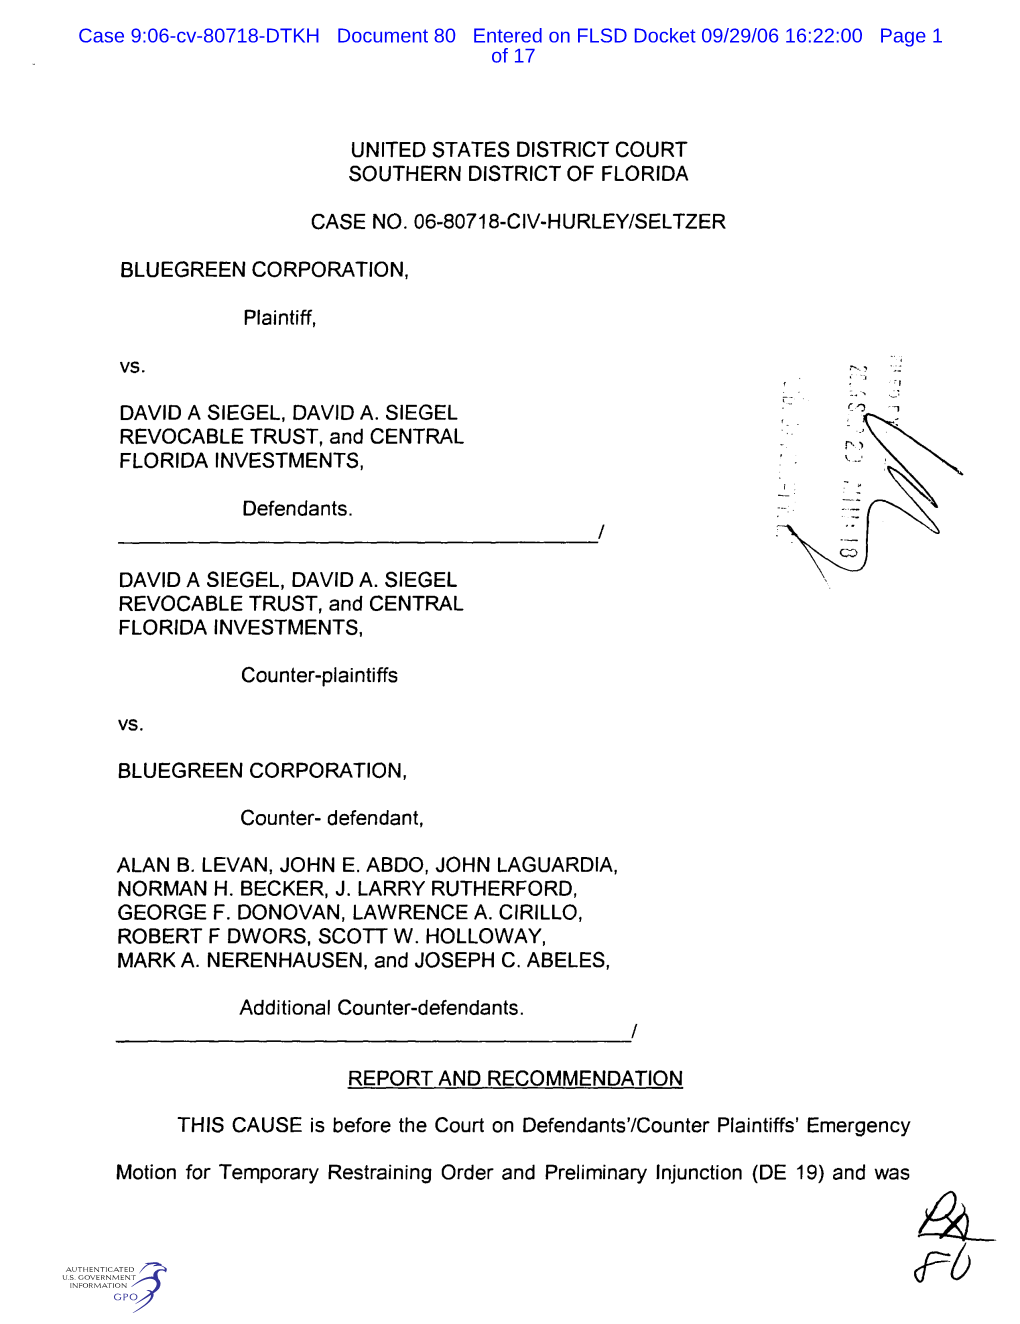 Case 9:06-Cv-80718-DTKH Document 80 Entered on FLSD Docket 09/29/06 16:22:00 Page 1 of 17